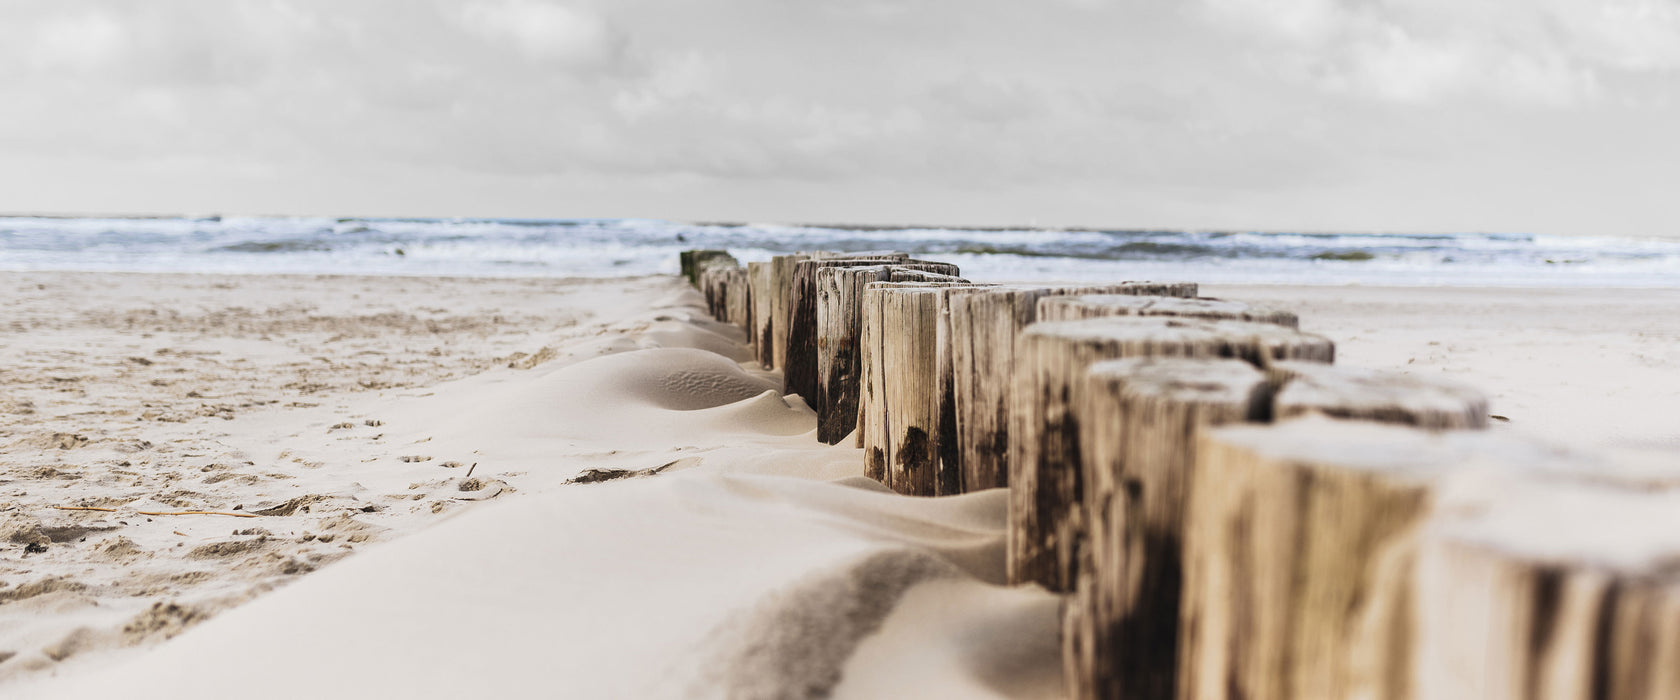 Nahaufnahme Steg aus Holzpföcken am Meer B&W Detail, Glasbild Panorama